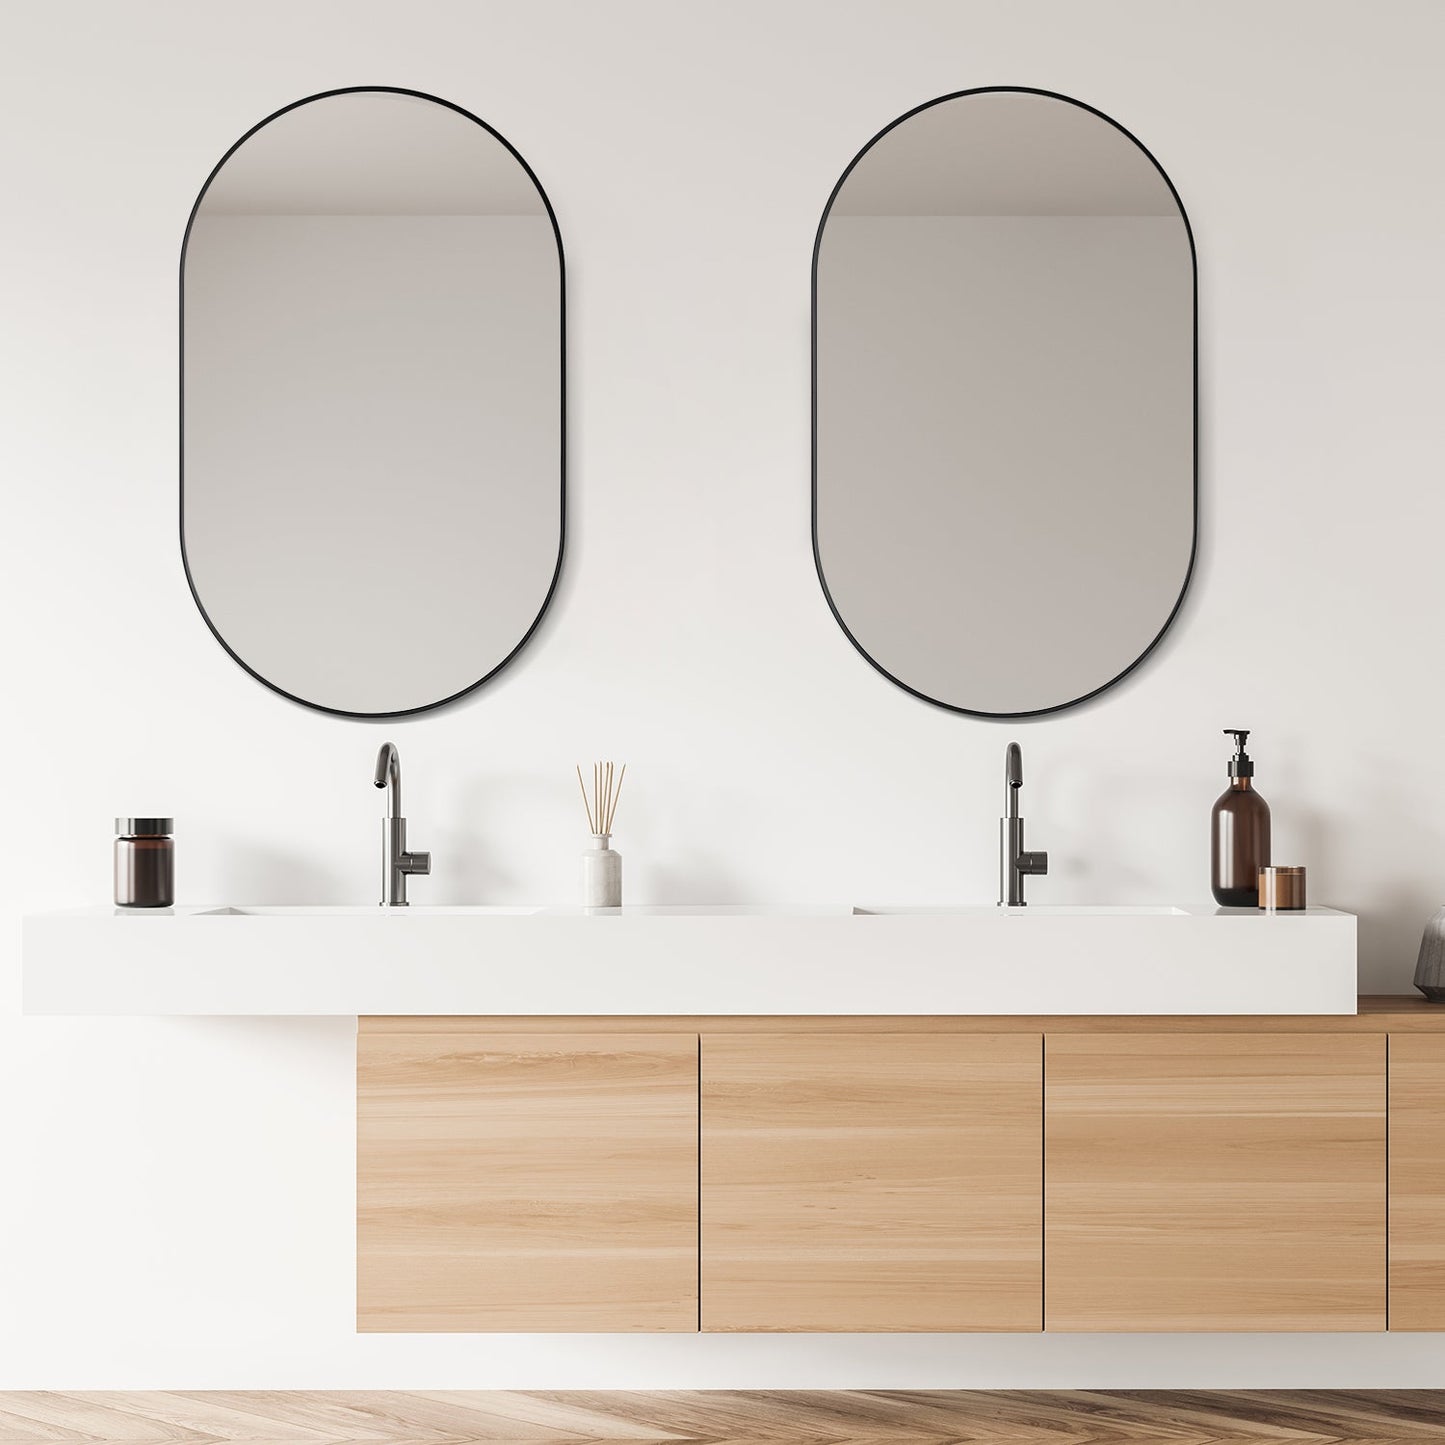 Ispra 36" Oval Bathroom/Vanity Matt Black Aluminum Framed Wall Mirror